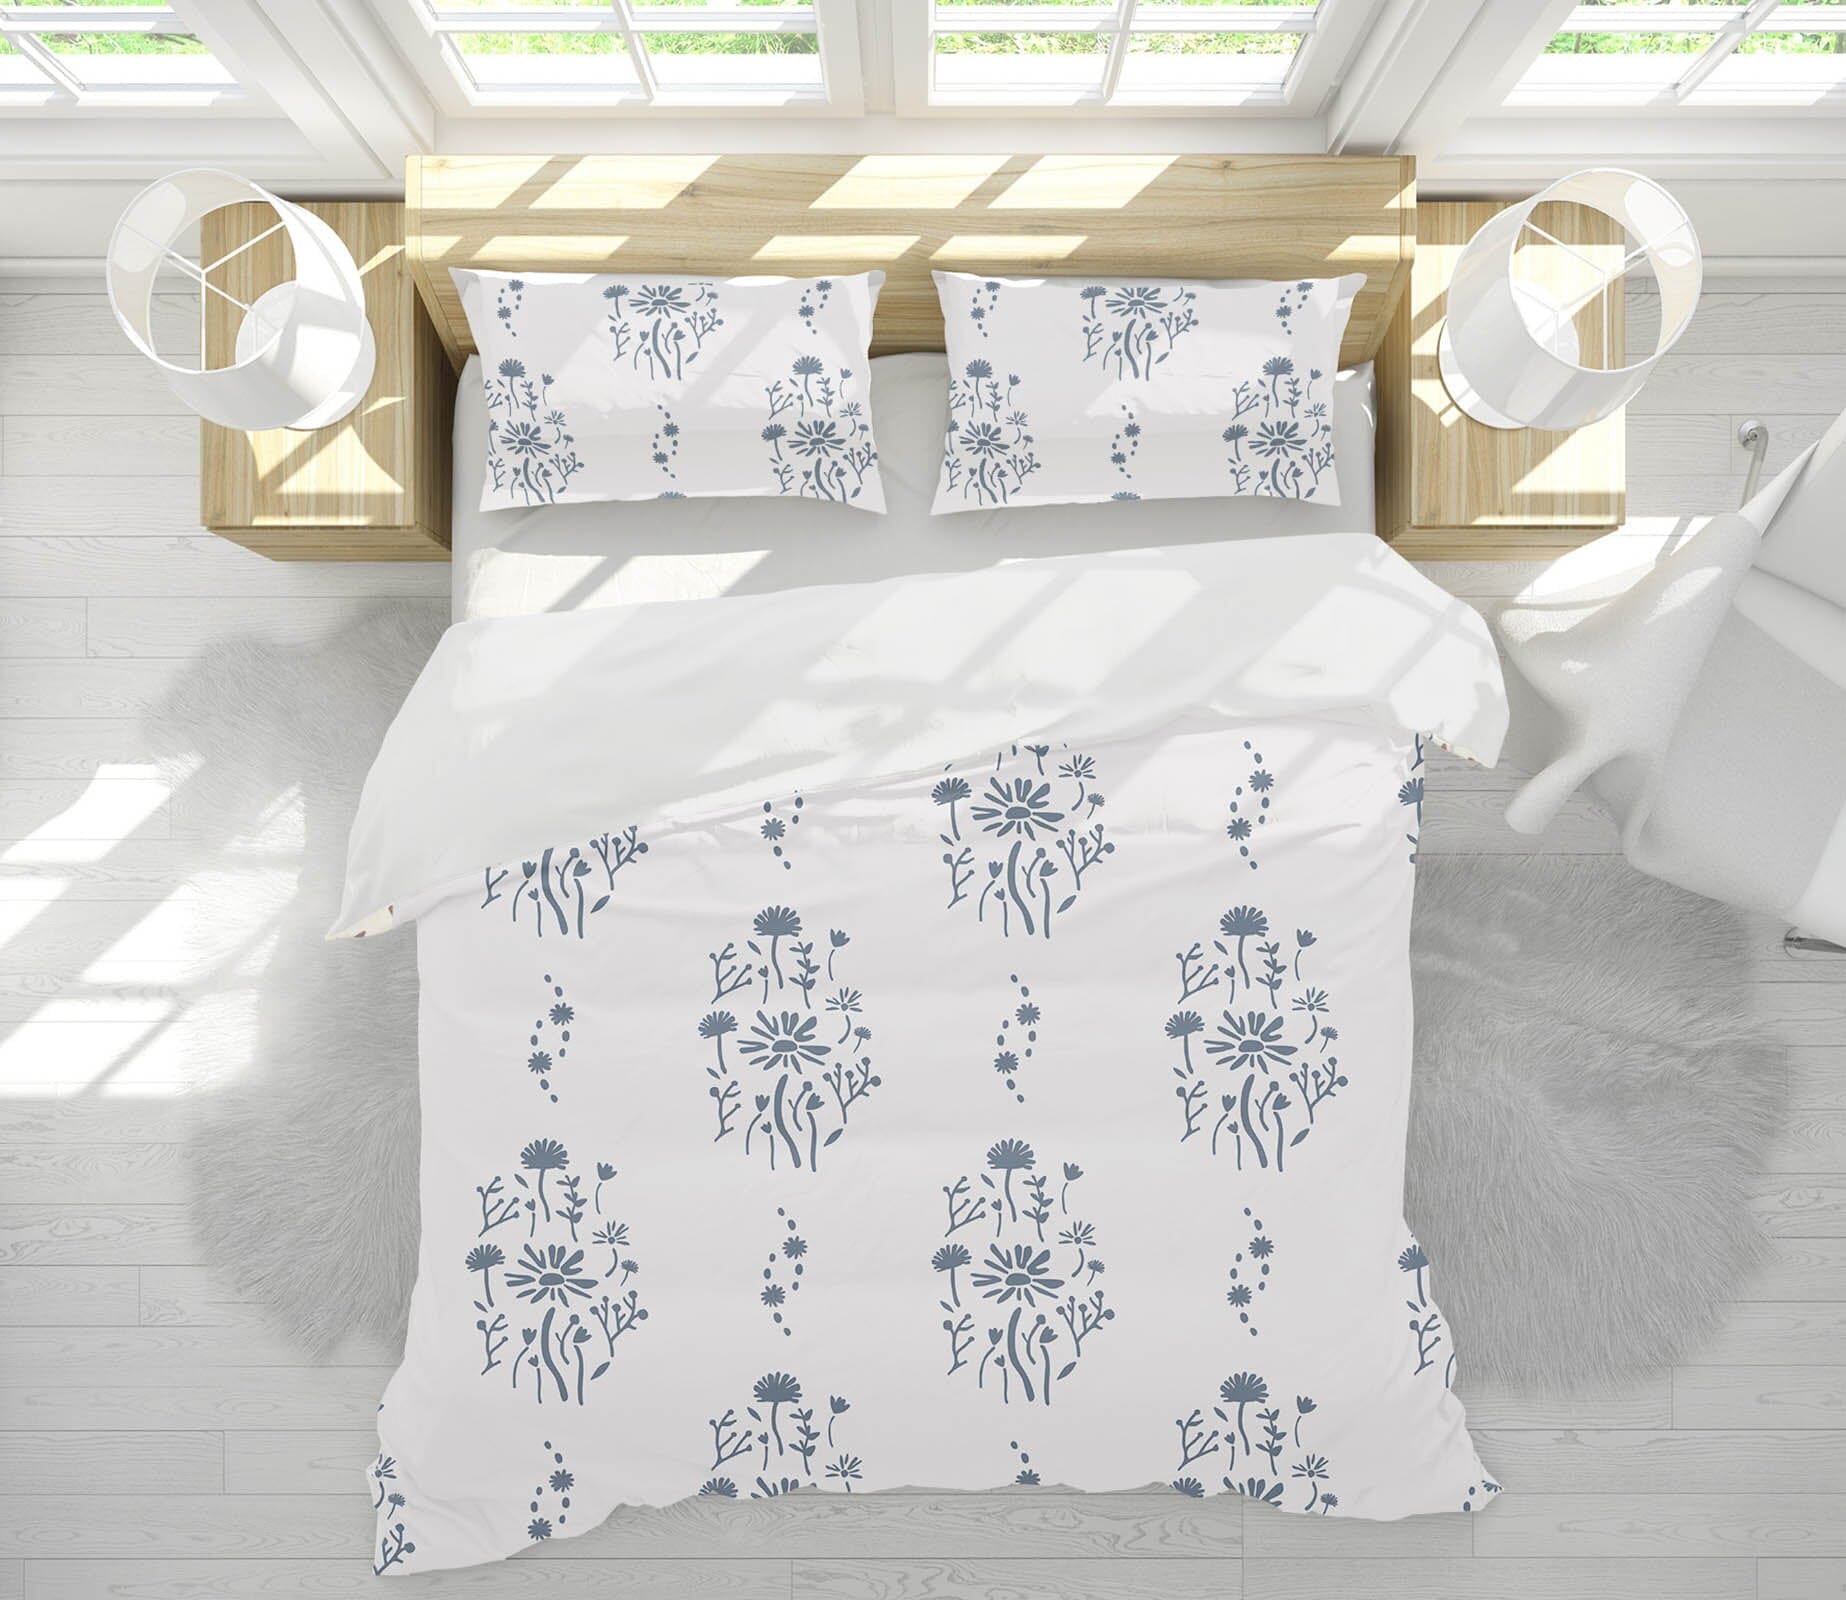 3D Flower Pattern 2101 Jillian Helvey Bedding Bed Pillowcases Quilt Quiet Covers AJ Creativity Home 